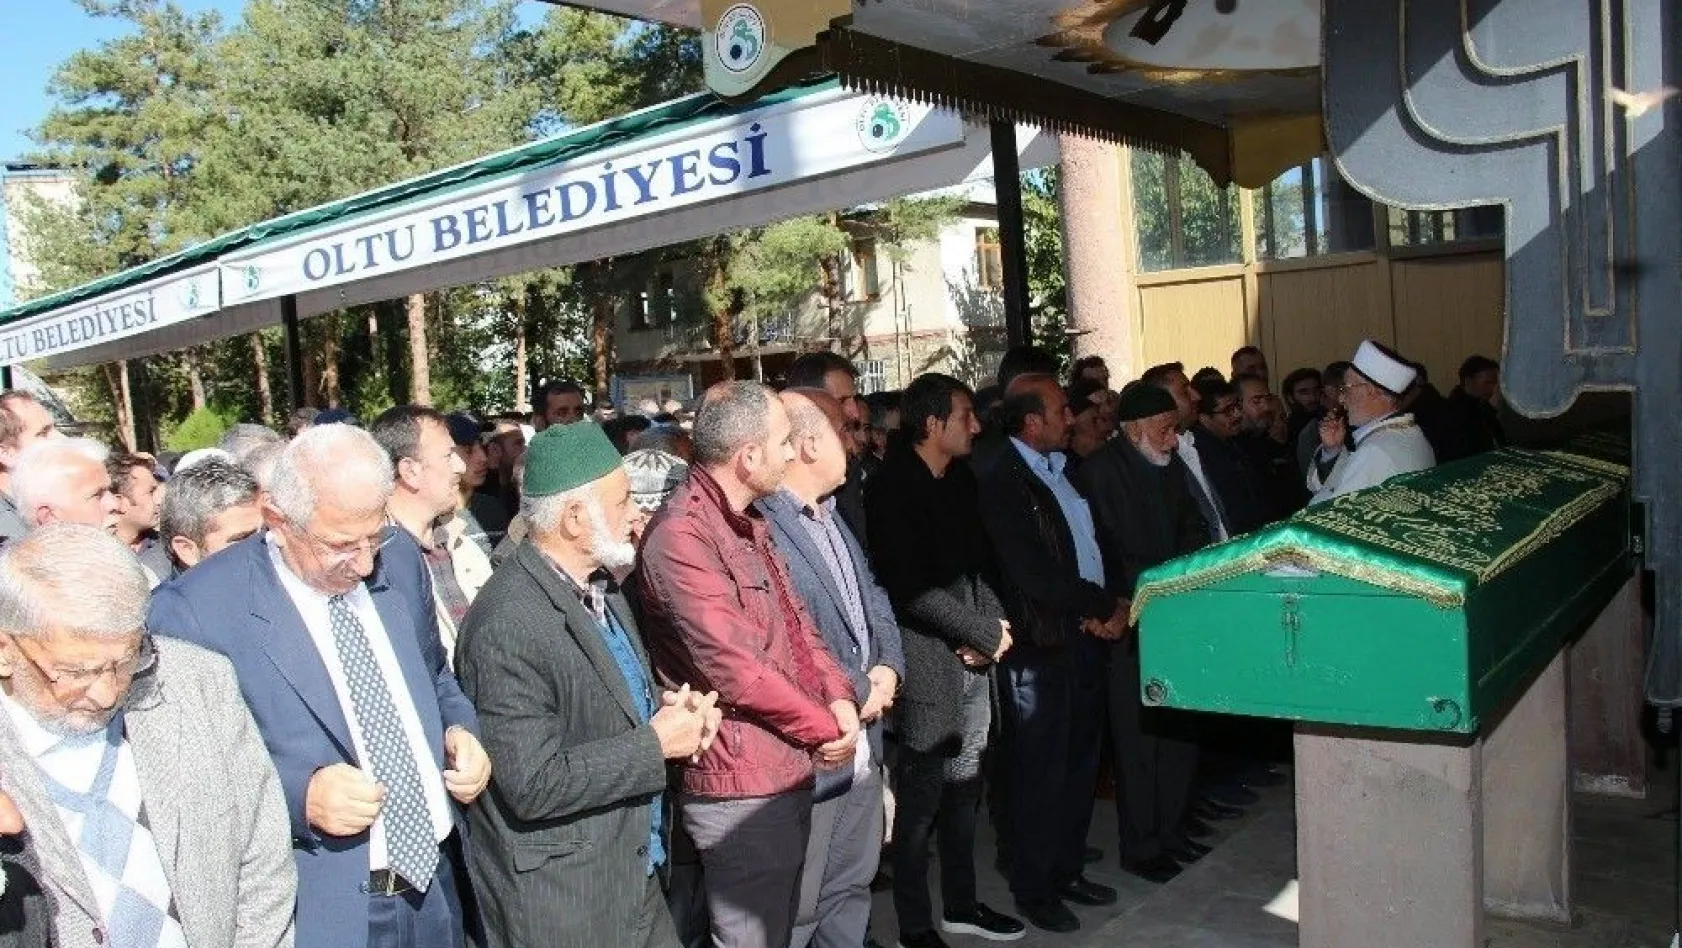 Oltu eşraflarından Mustafa Altun hayatını kaybetti
